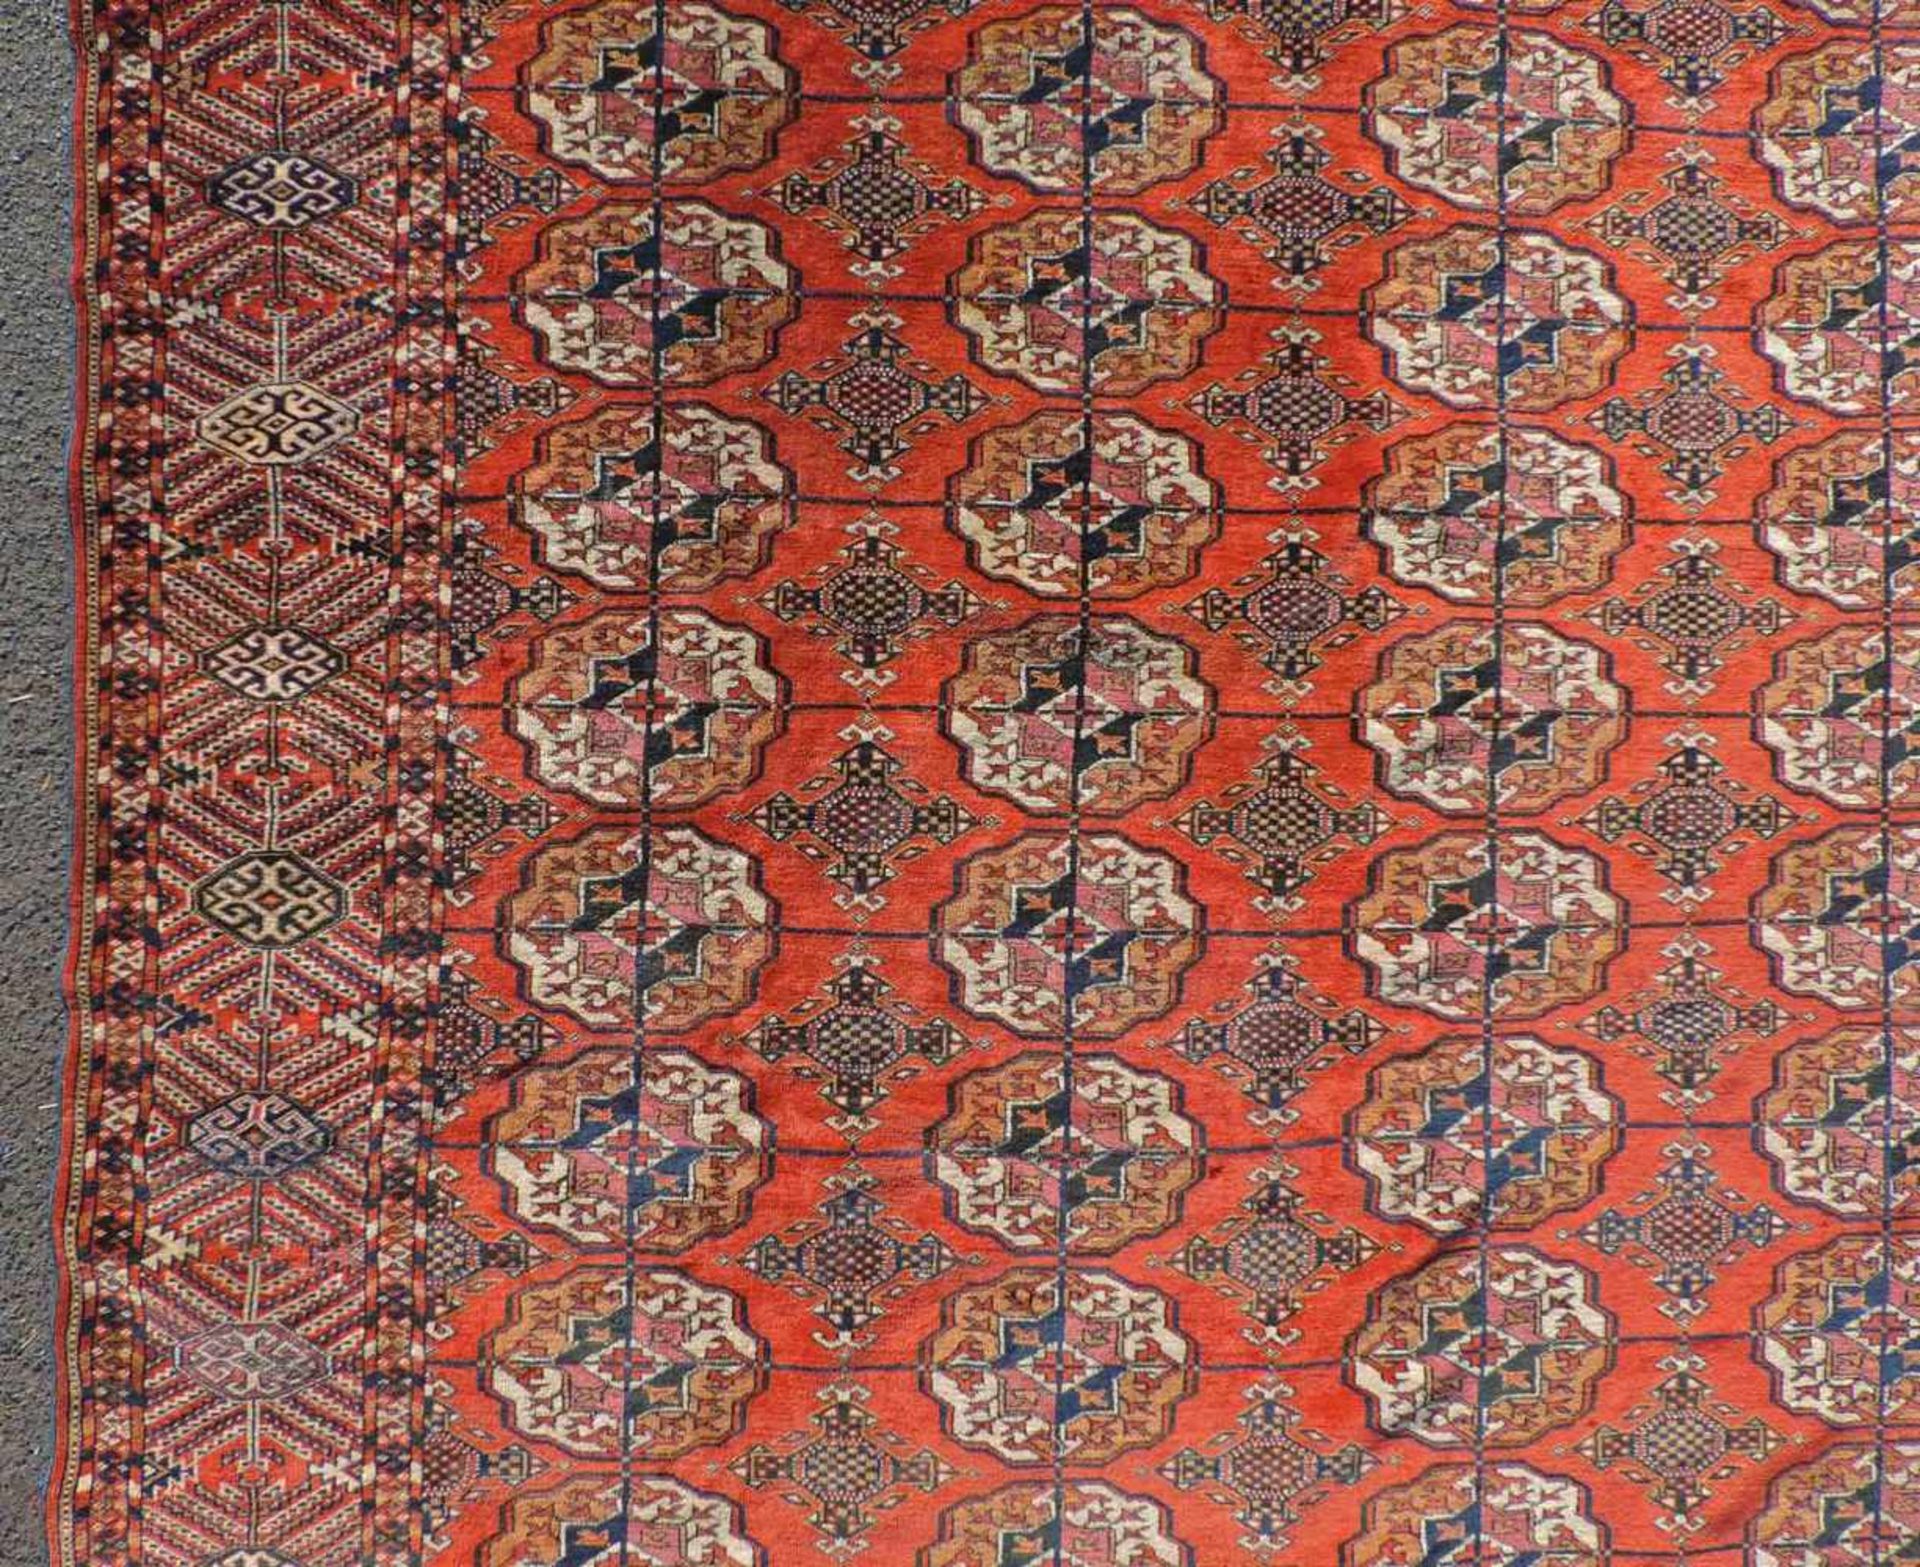 Jomud Stammesteppich. Iran. Antik, um 1910.309 cm x 210 cm. Handgeknüpft. Wolle auf Wolle. Göklan - Bild 4 aus 8